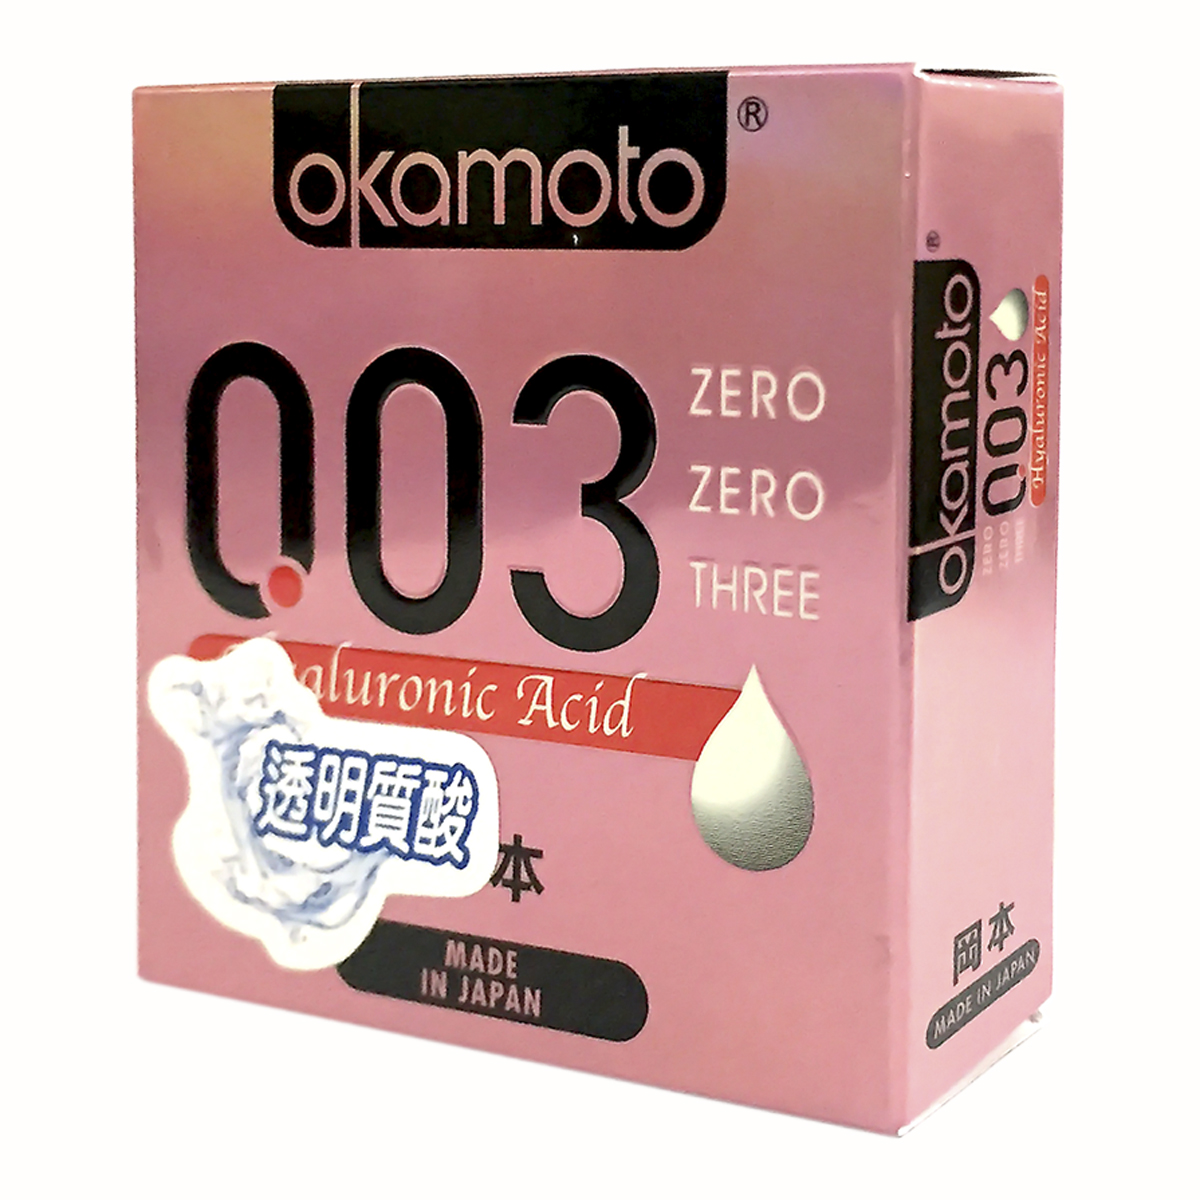 Bao Cao Su Okamoto 0.03 Hyaluronic Acid Siêu Mỏng Dưỡng Ẩm Và Bôi Trơn Hộp 3 Cái